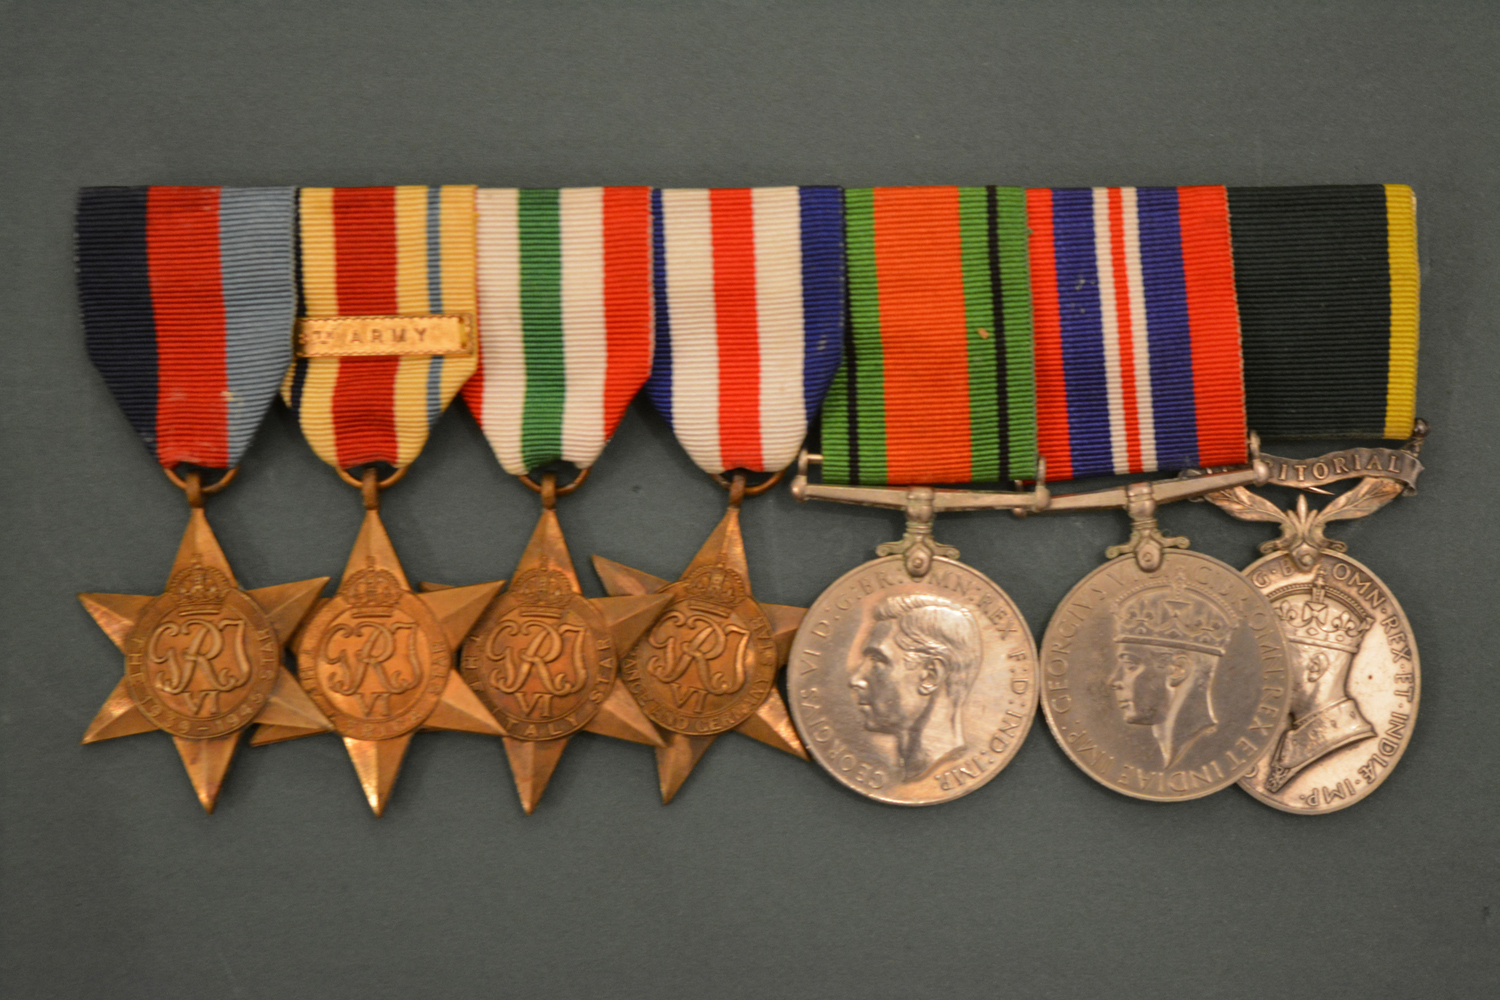 John's medals